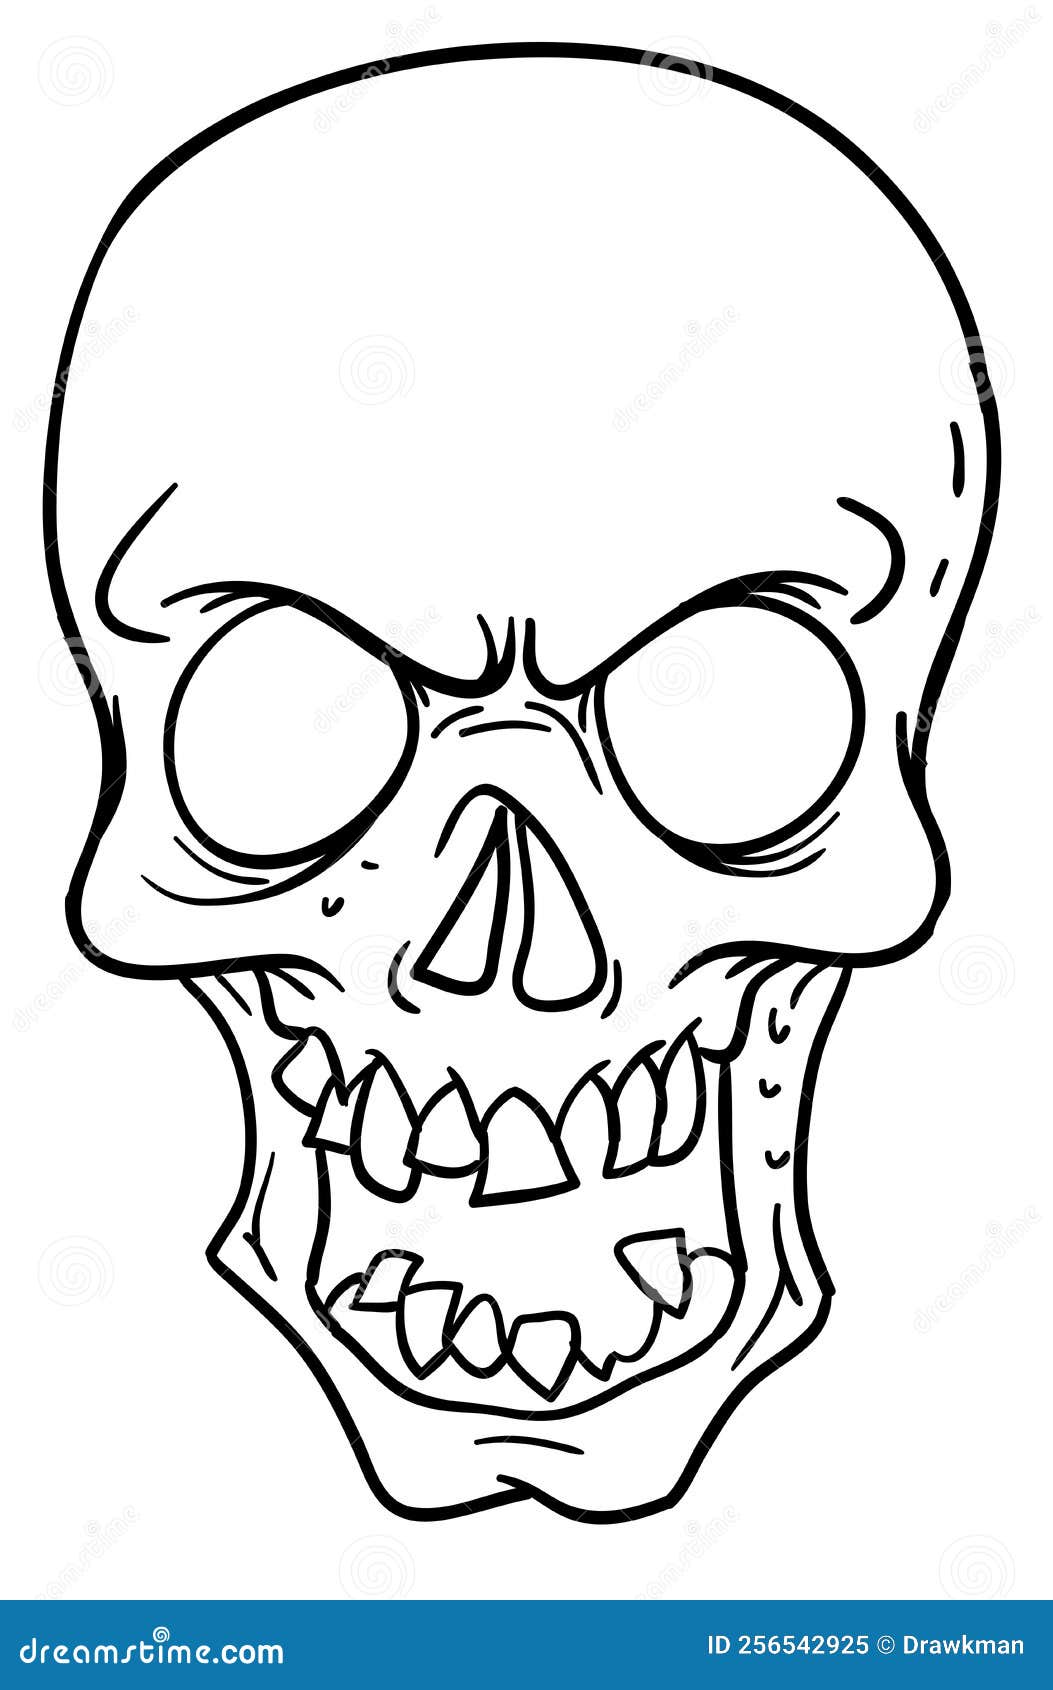 Ilustração Para Halloween Imagem De Um Crânio Dos Desenhos Animados  Ilustração Do Vetor Desenho Da Mão Ilustração do Vetor - Ilustração de  cruz, remendo: 102641924